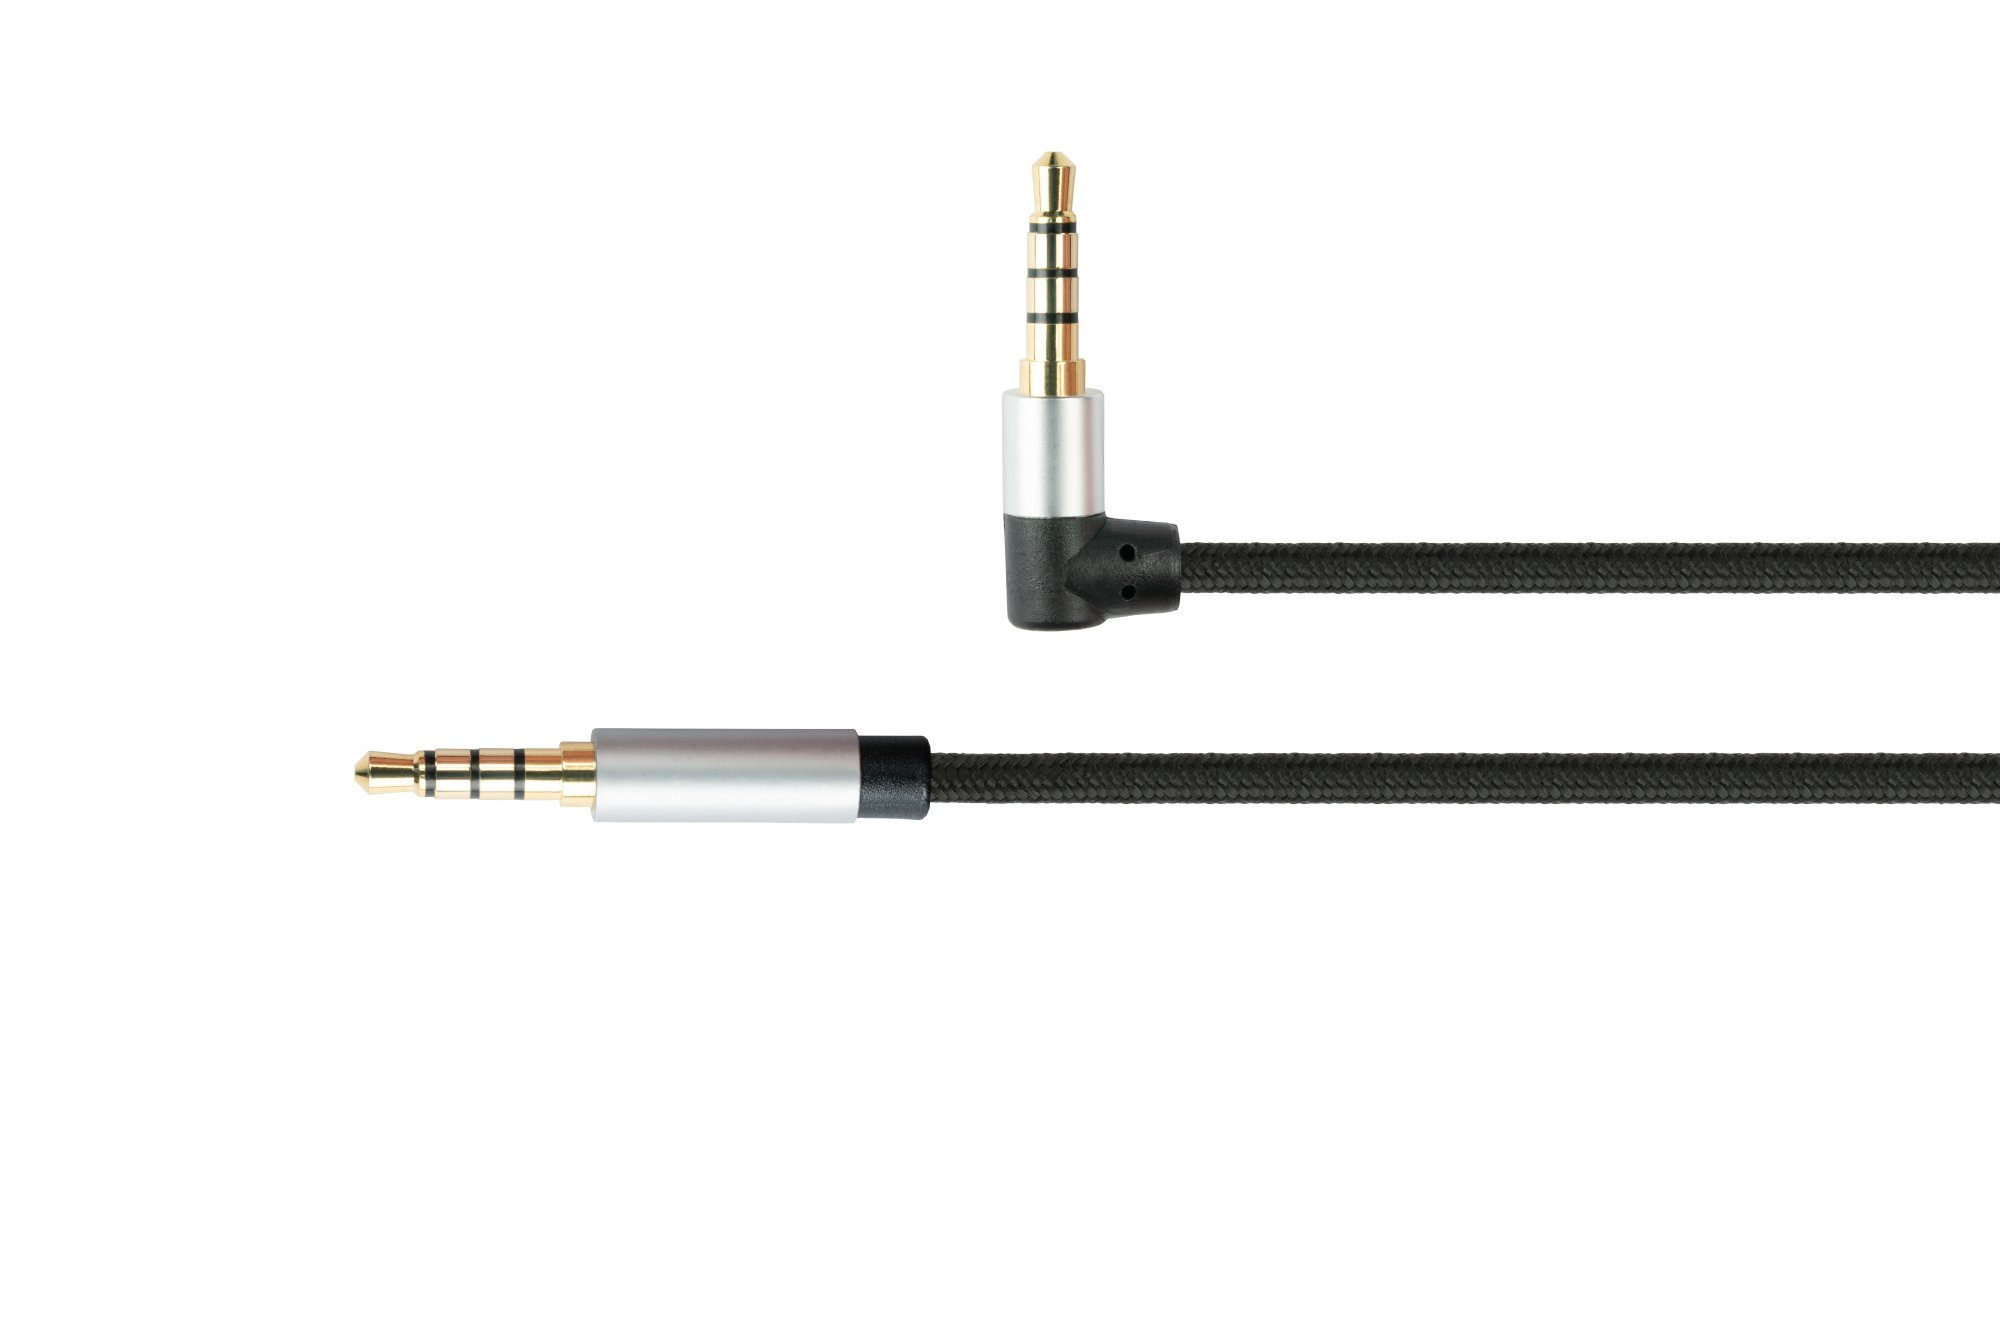 Audio Anschlusskabel High-Quality, 4-poliger 3,5mm Klinkenstecker an Klinkenstecker gewinkelt, Textilmantel, schwarz, 0,5m